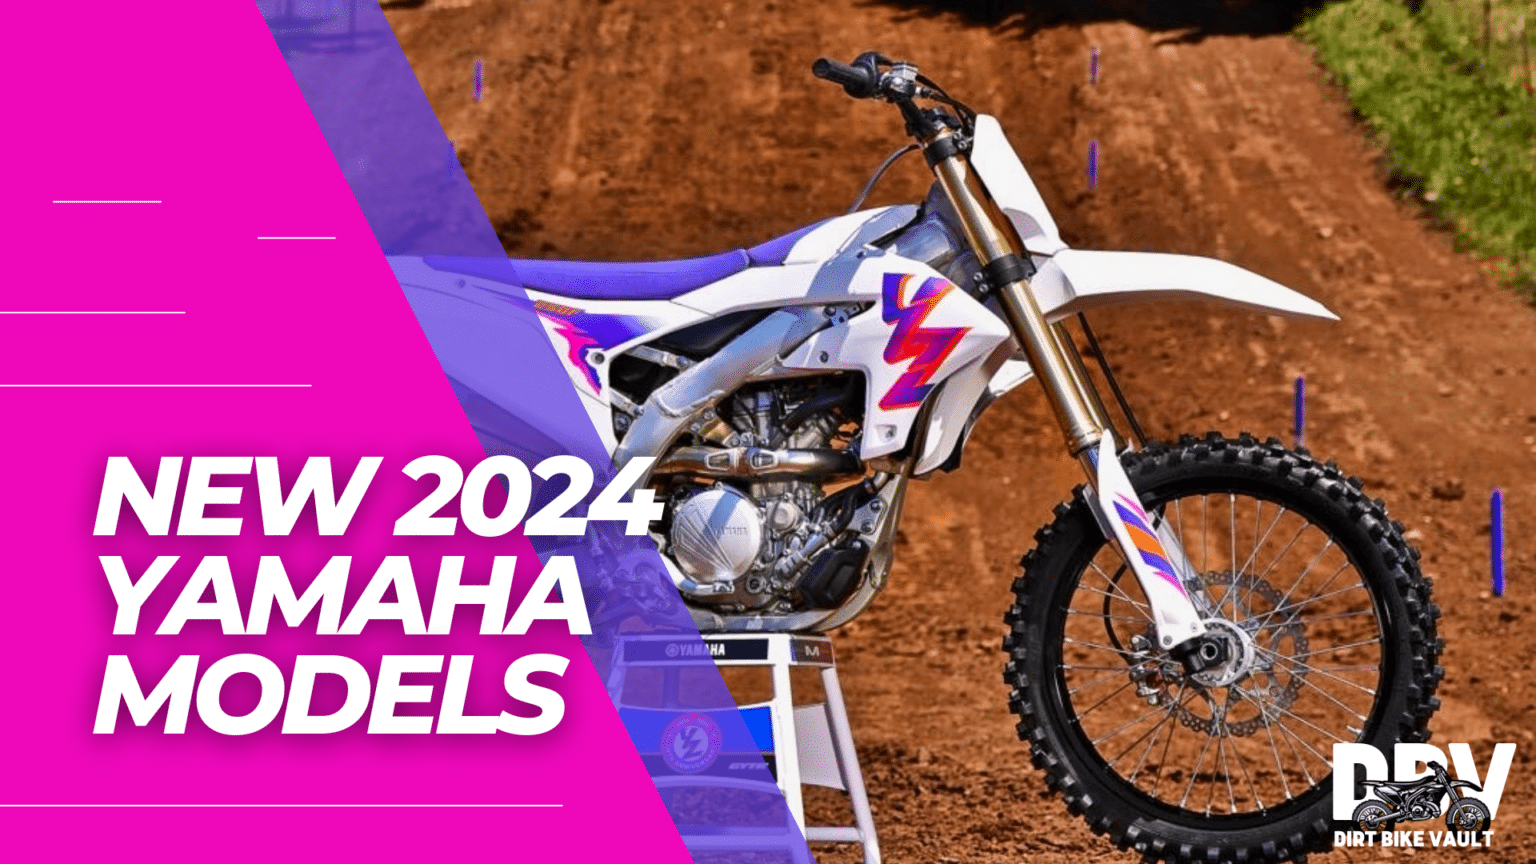 2024 Yamaha Dirt Bikes 1536x864 